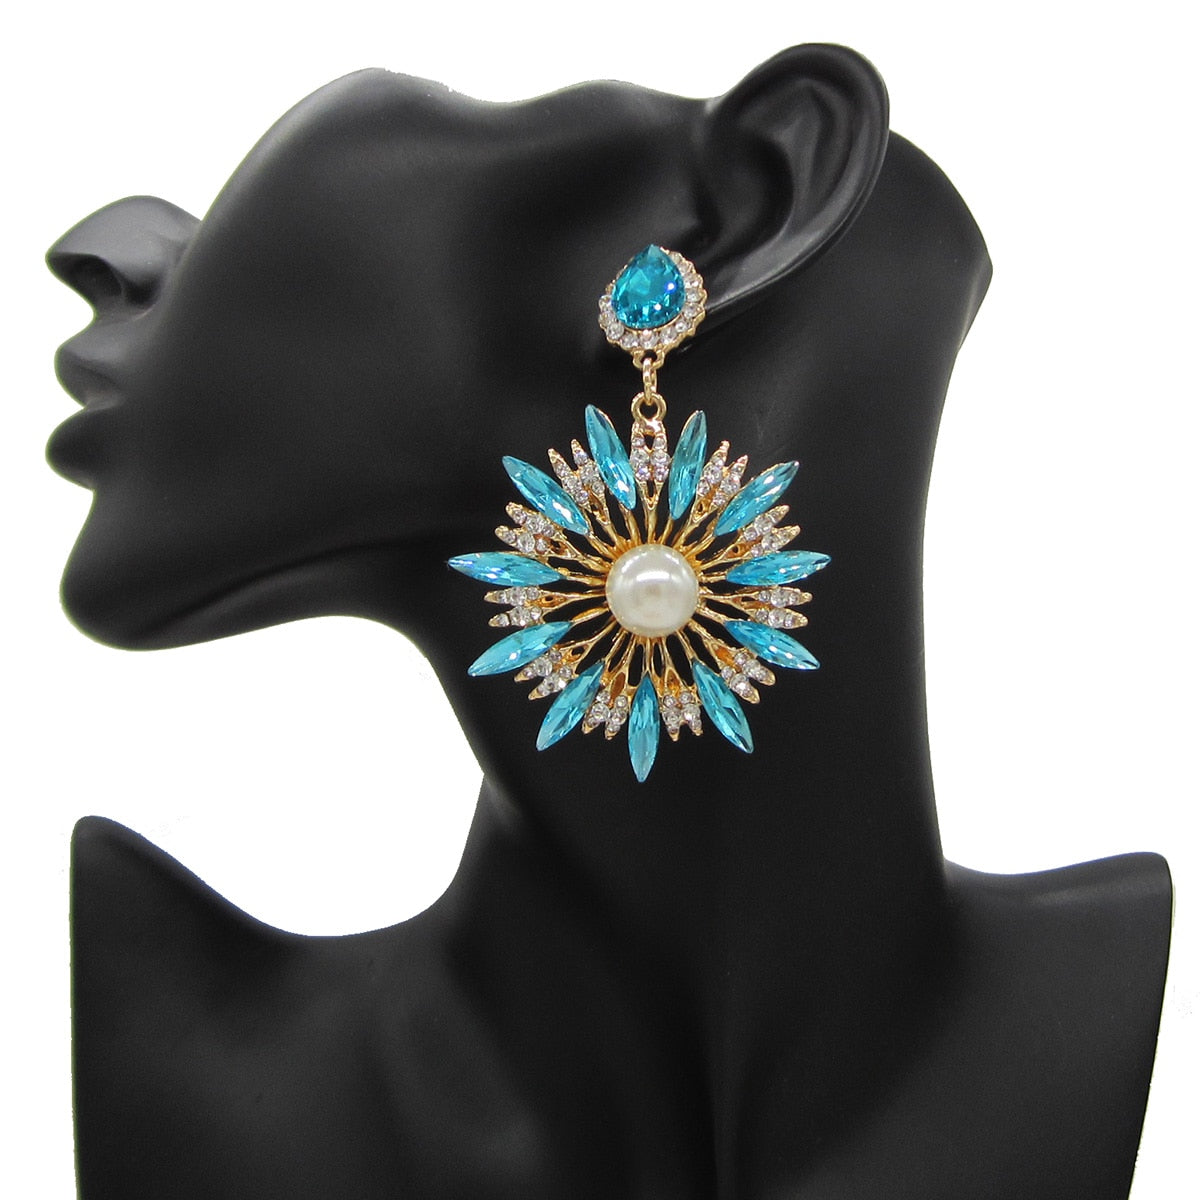 New Design High Quality Glass Drills Dangle Boho Earrings for Women